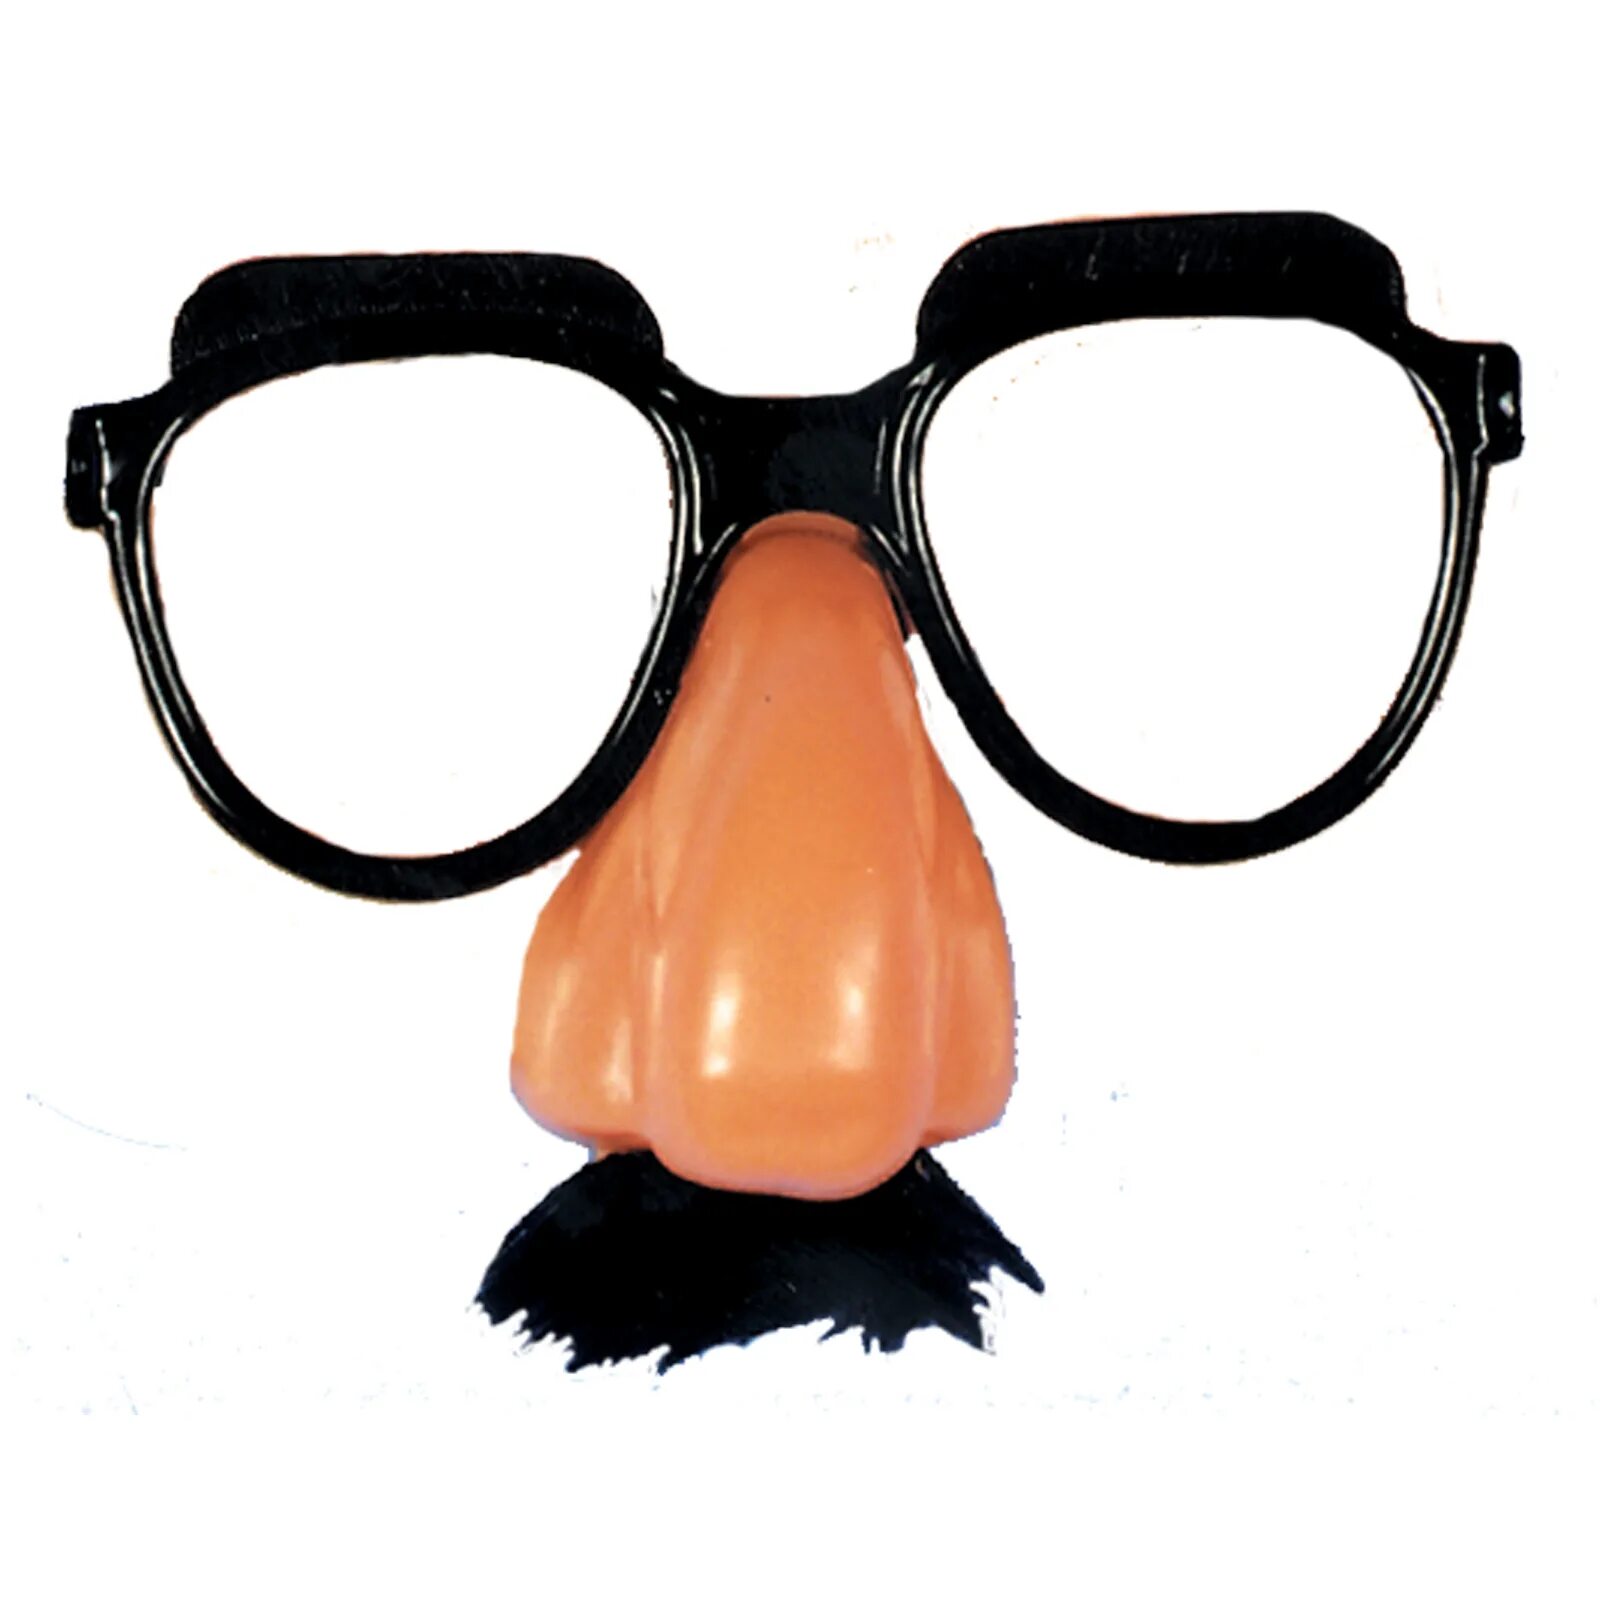 Смешные картинки очков. Очки-маска с носом. Маска с носом и очками. Маска с усами и очками. Маска очки нос усы.